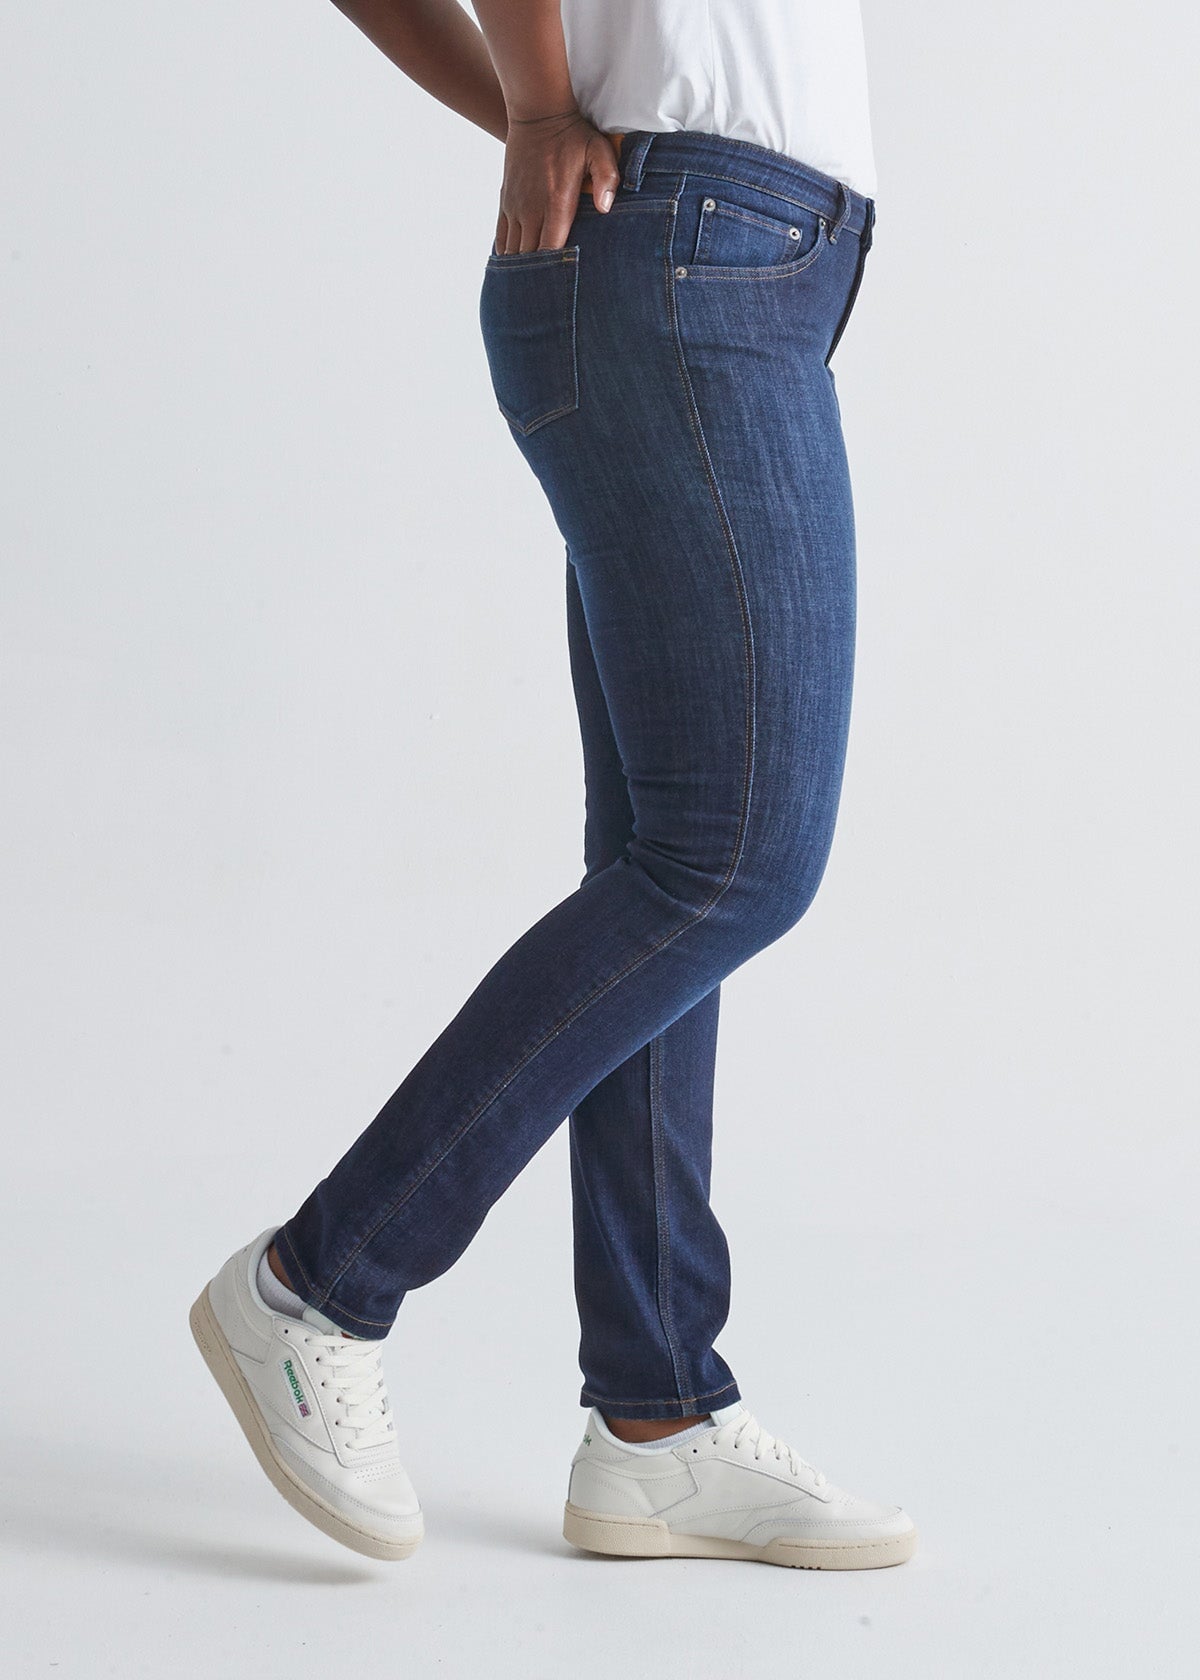 Duer Performance Denim Slim Straight Jeans, 30 Inseam - Wash